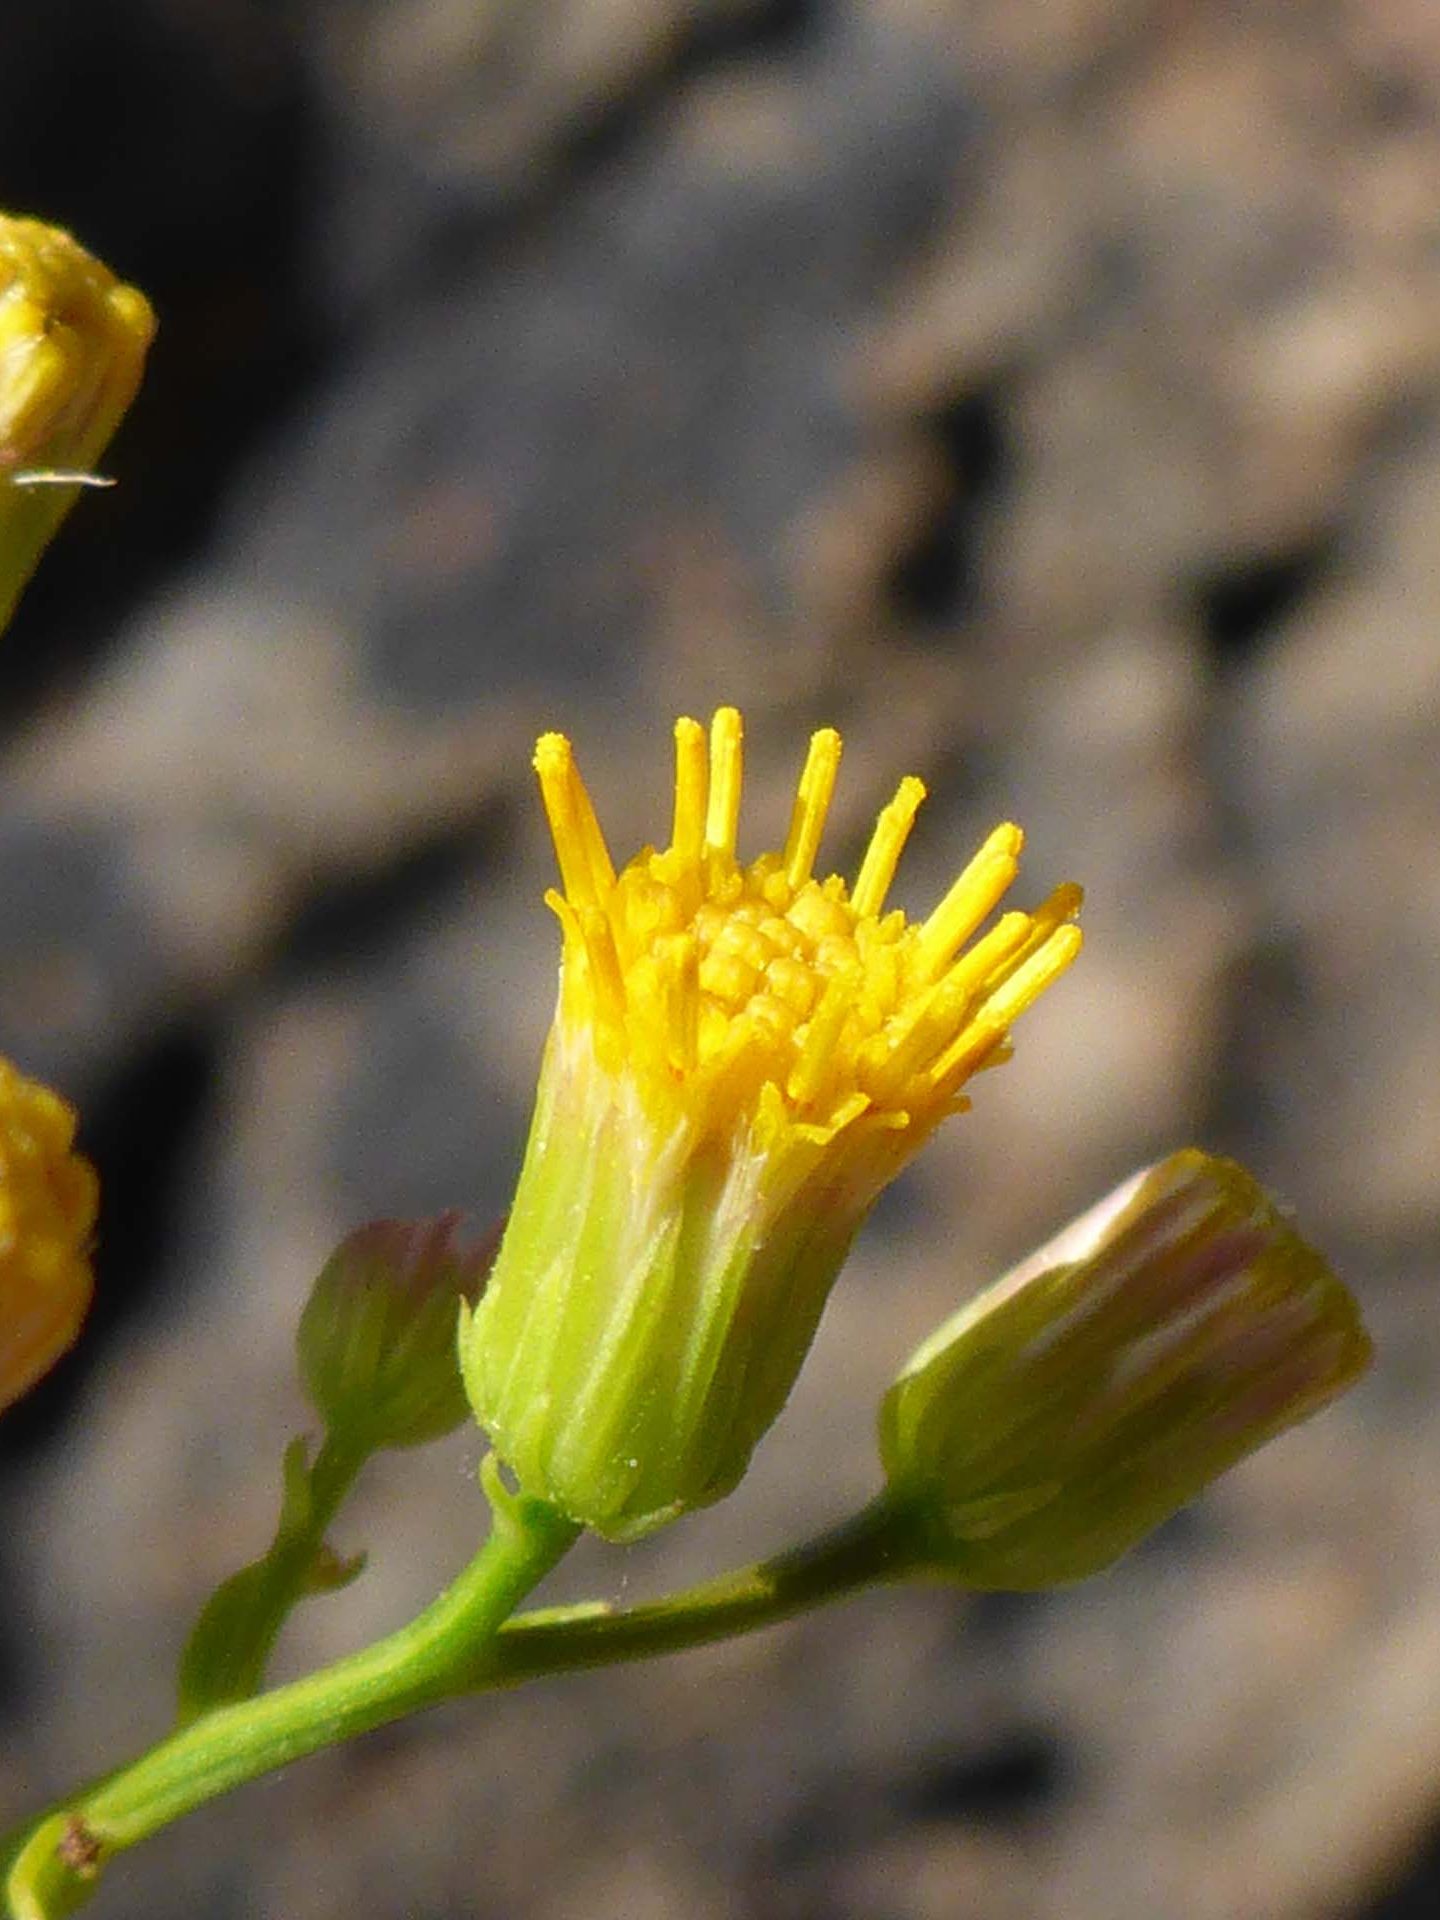 California rayless daisy close-up. D. Burk.